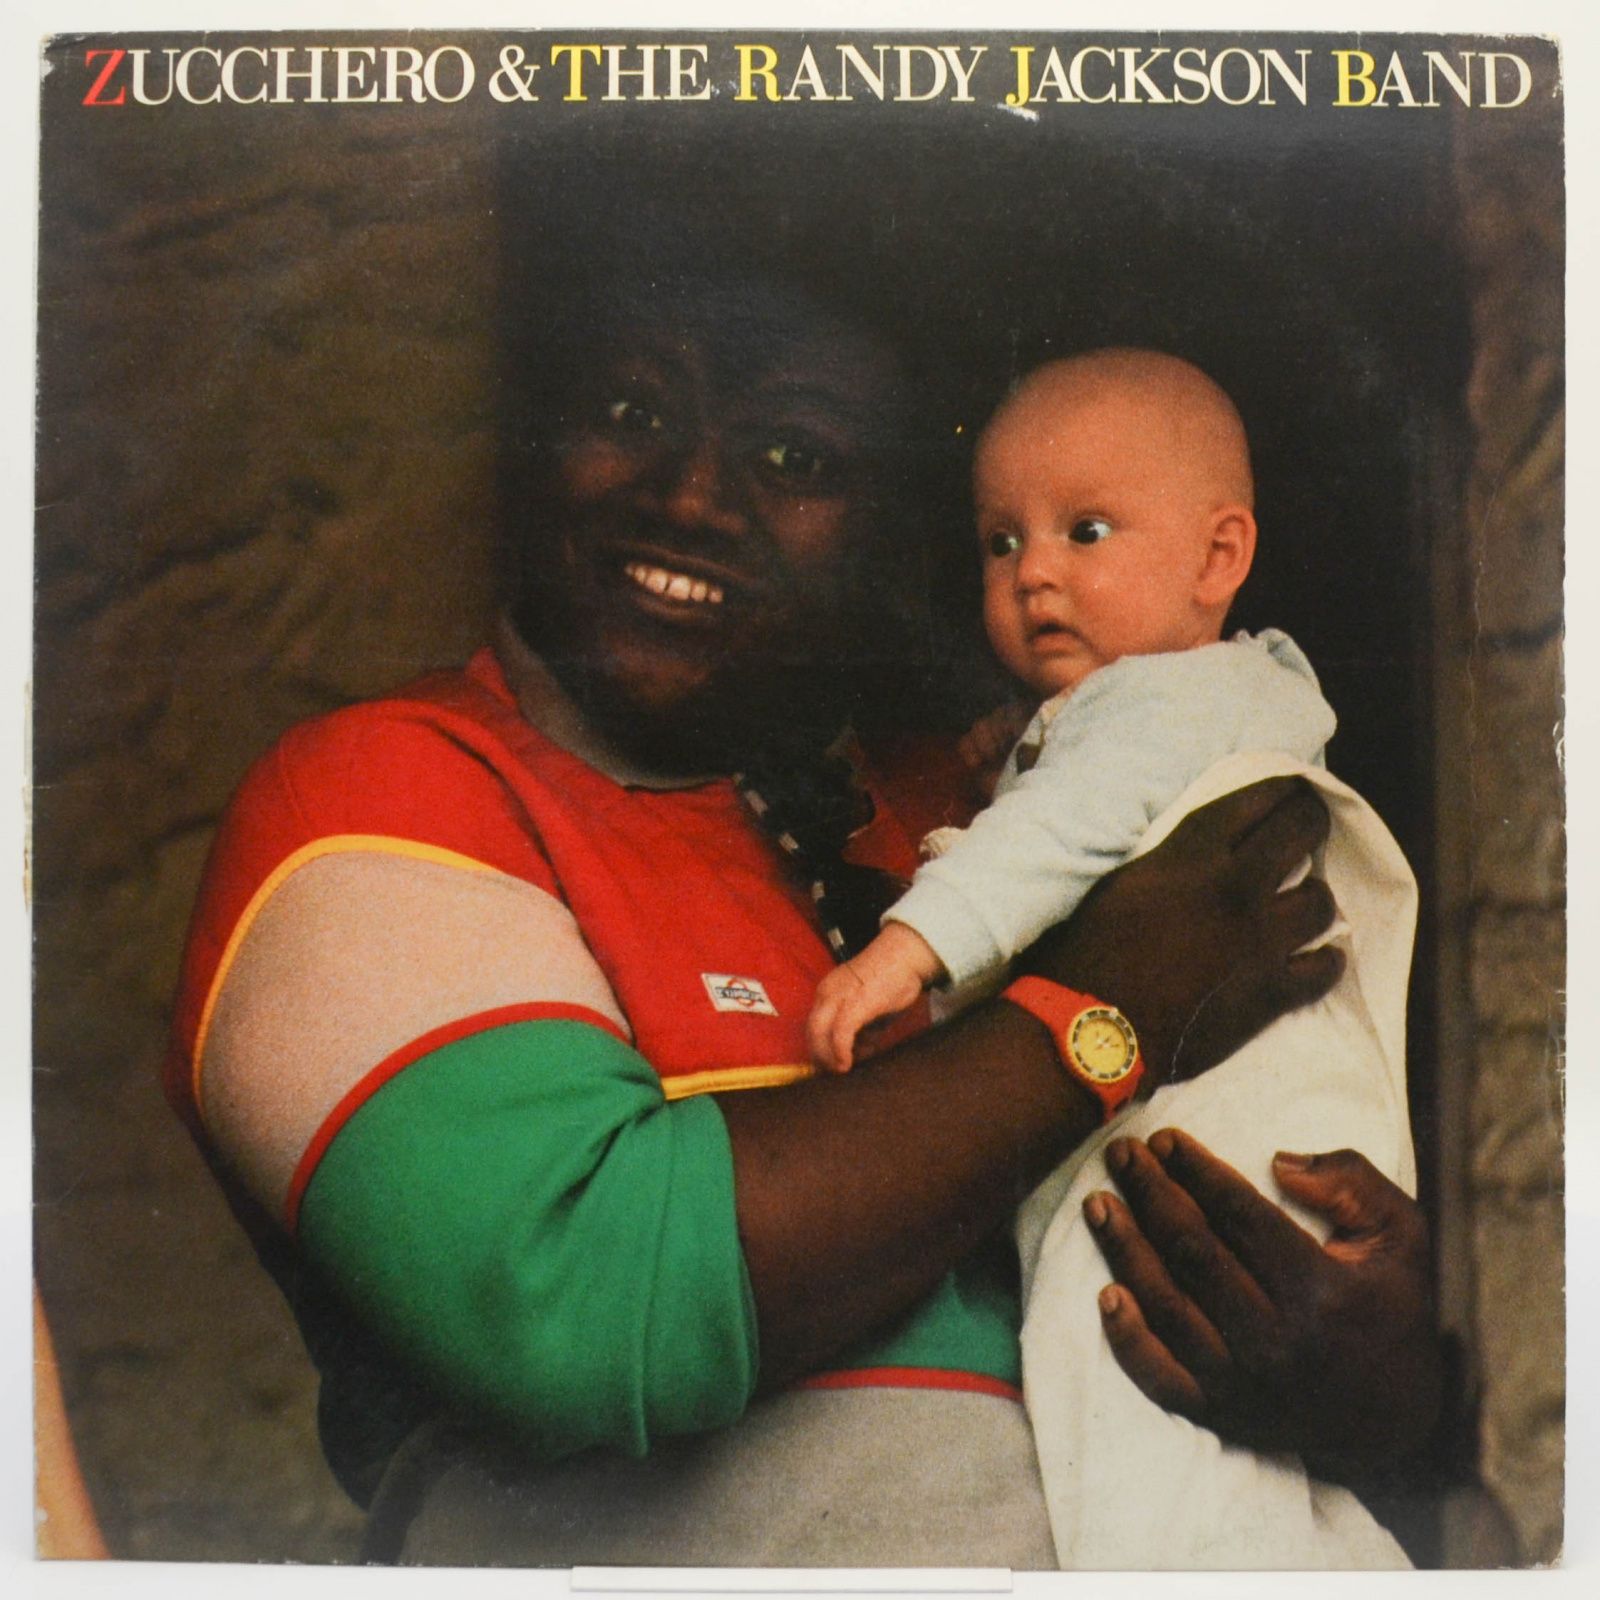 Zucchero & The Randy Jackson Band (Italy), 1985